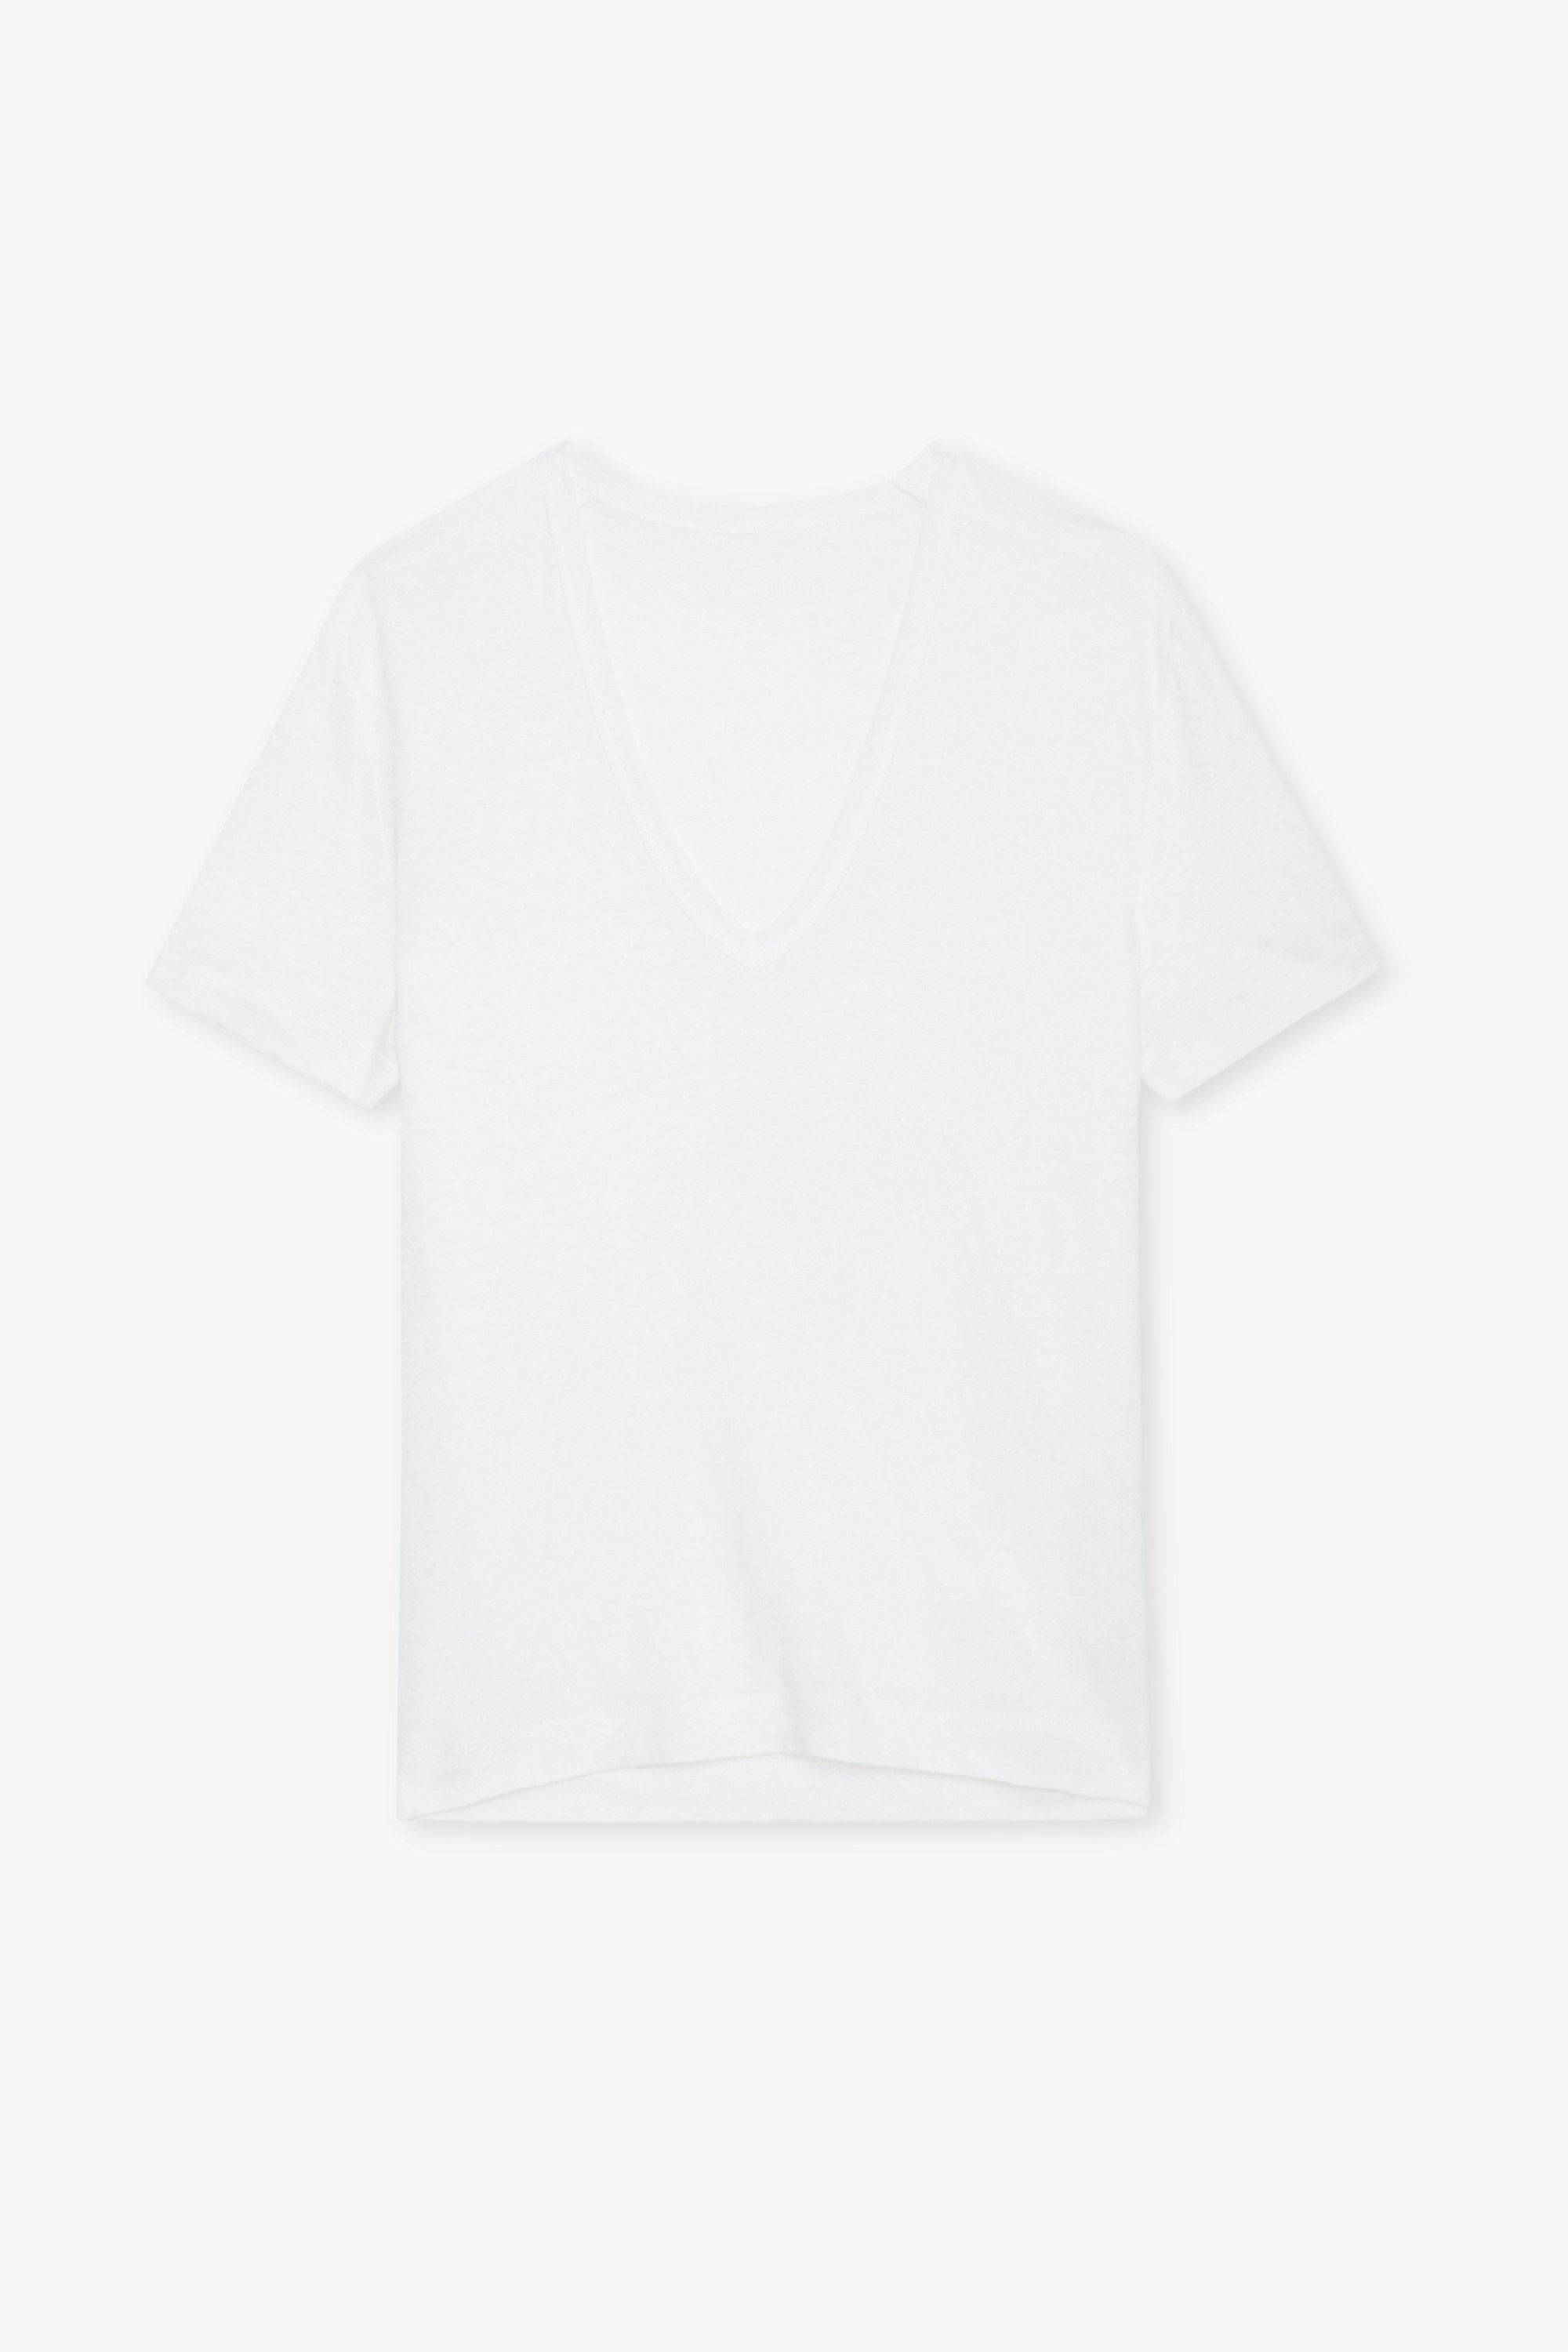 Camiseta de Lino Wassa - Camiseta blanca de lino ecológico con cuello en V y mangas cortas.